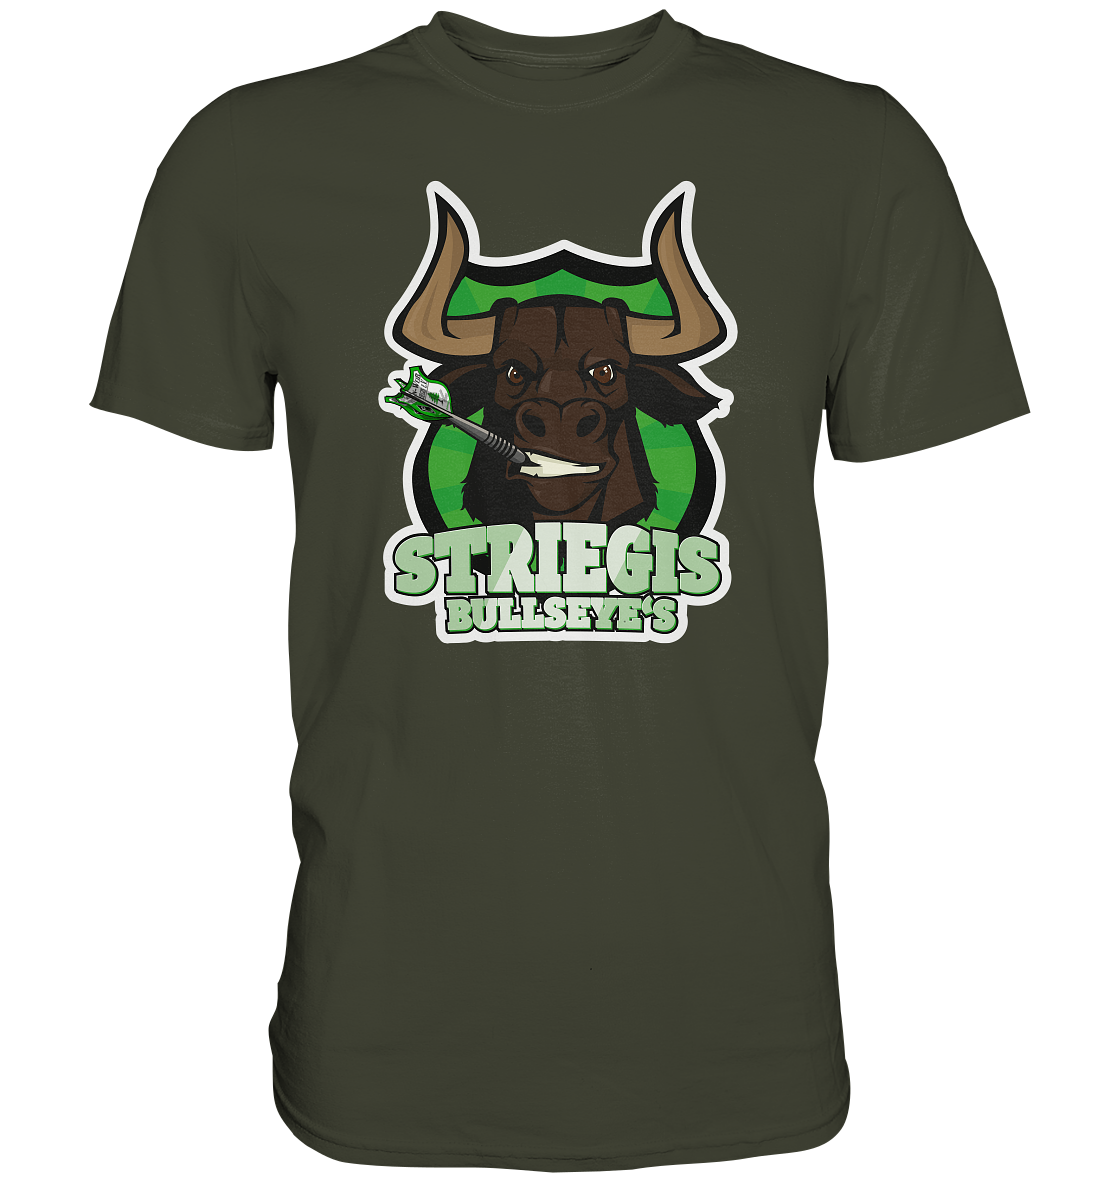 STRIEGIS BULLSEYES - Basic Shirt